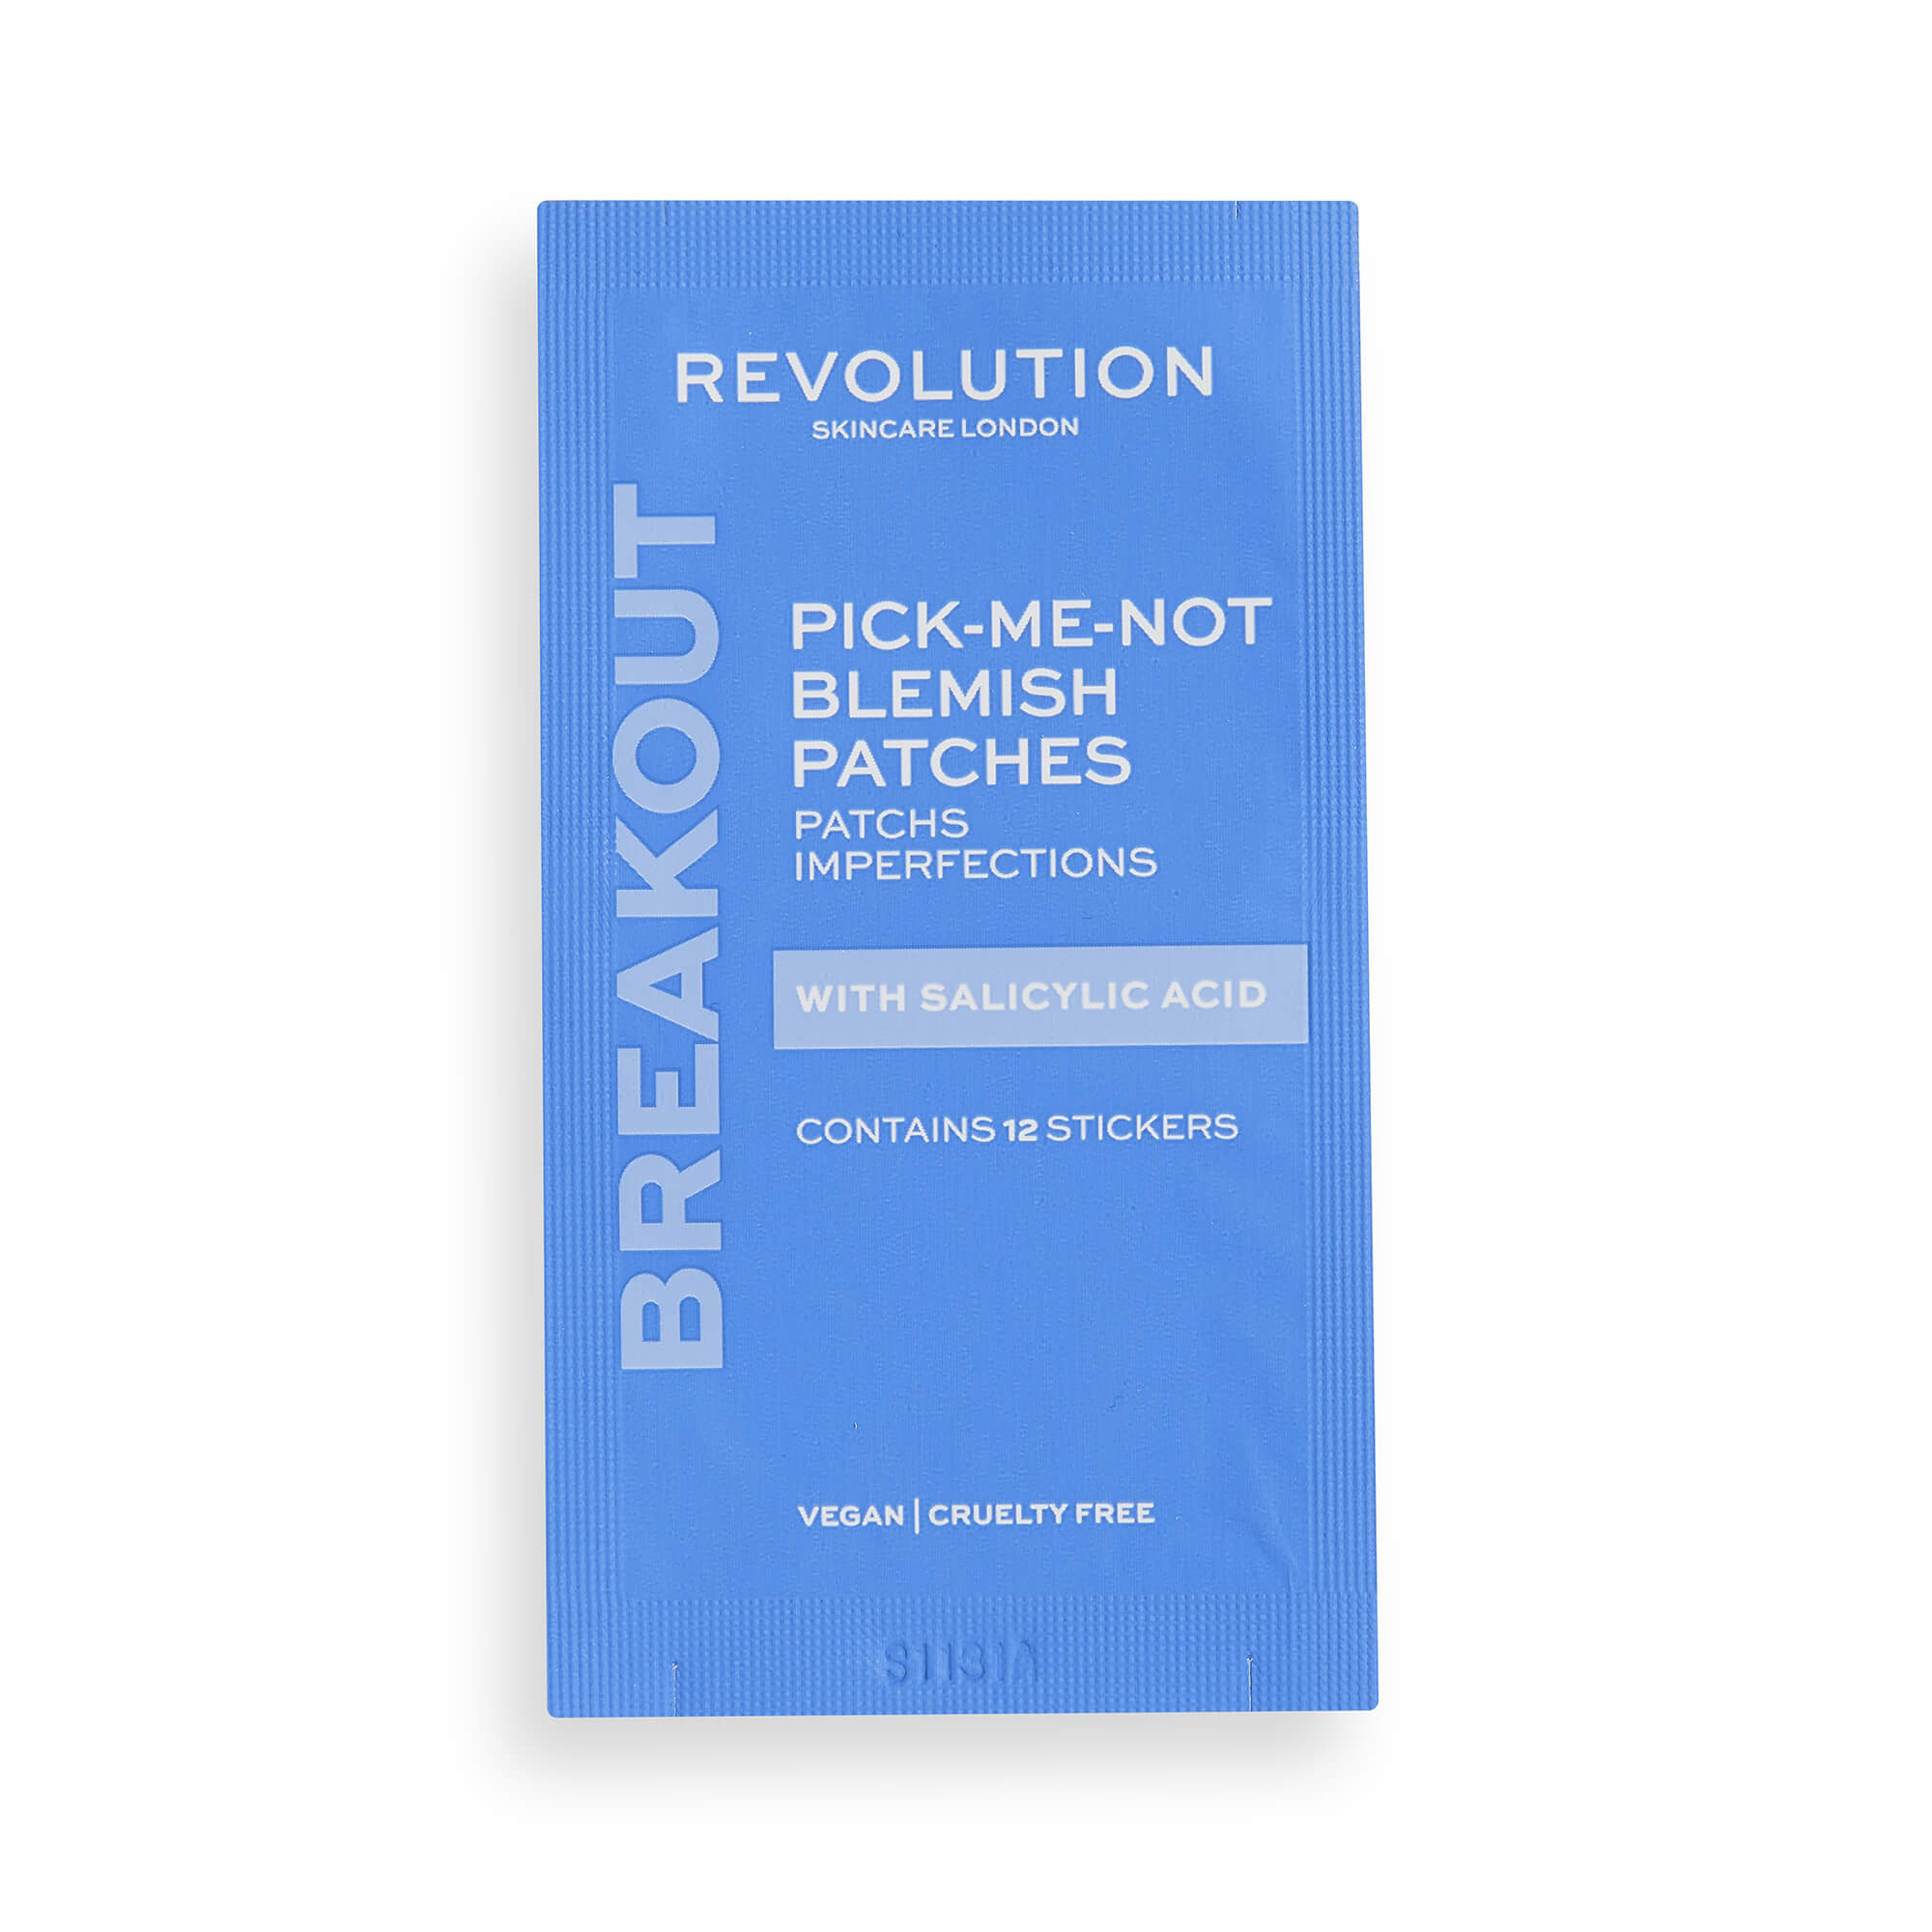 Revolution Skincare Čisticí pleťové náplasti Pick-Me-Not Blemish Patches (Contains Stickers) 60 ks